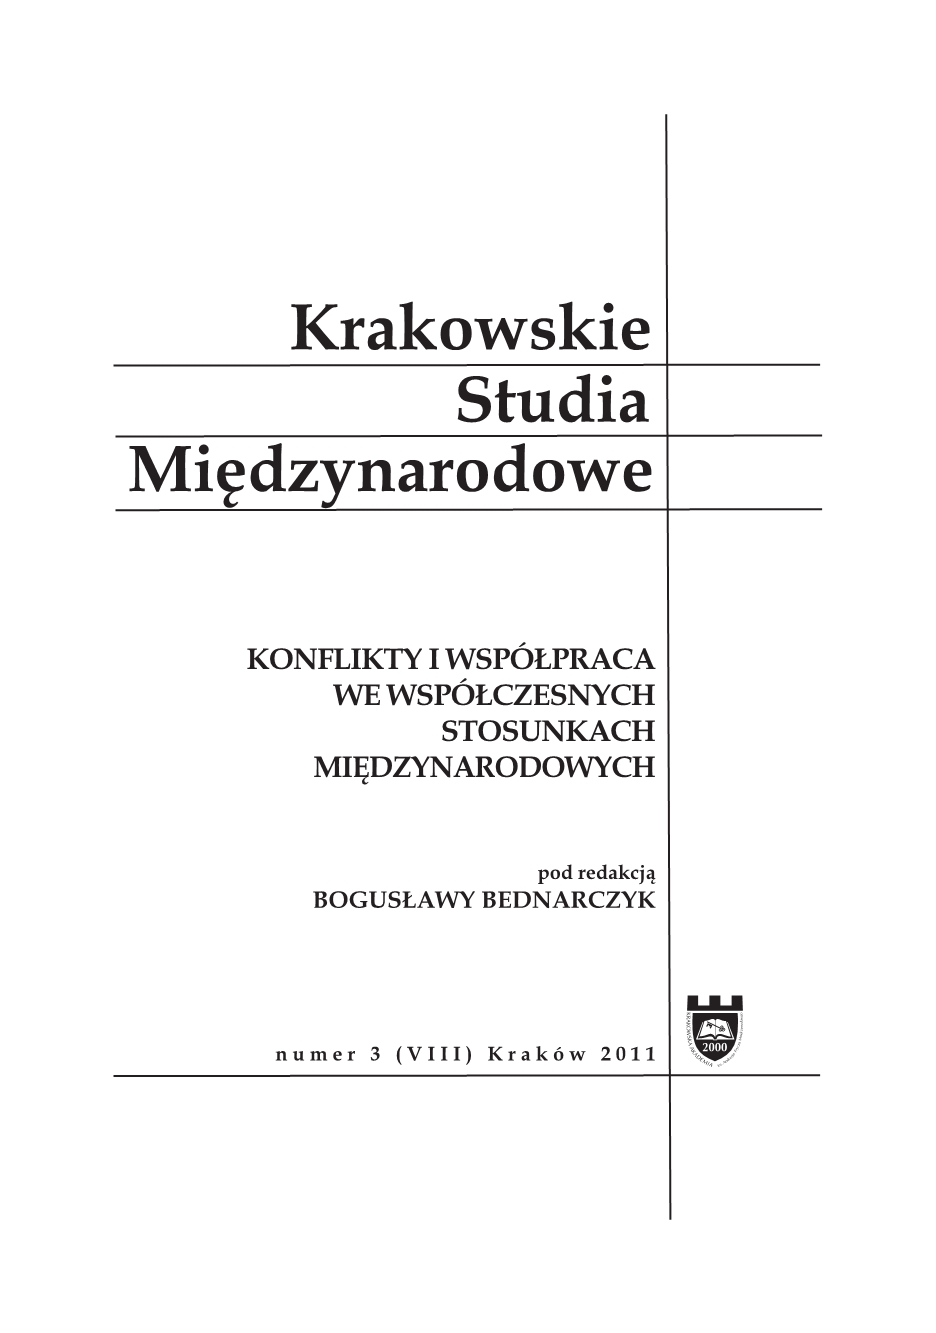 Znaczenie dla stosunków polsko-rosyjskich Polsko-Rosyjskiej Grupy ds. Trudnych